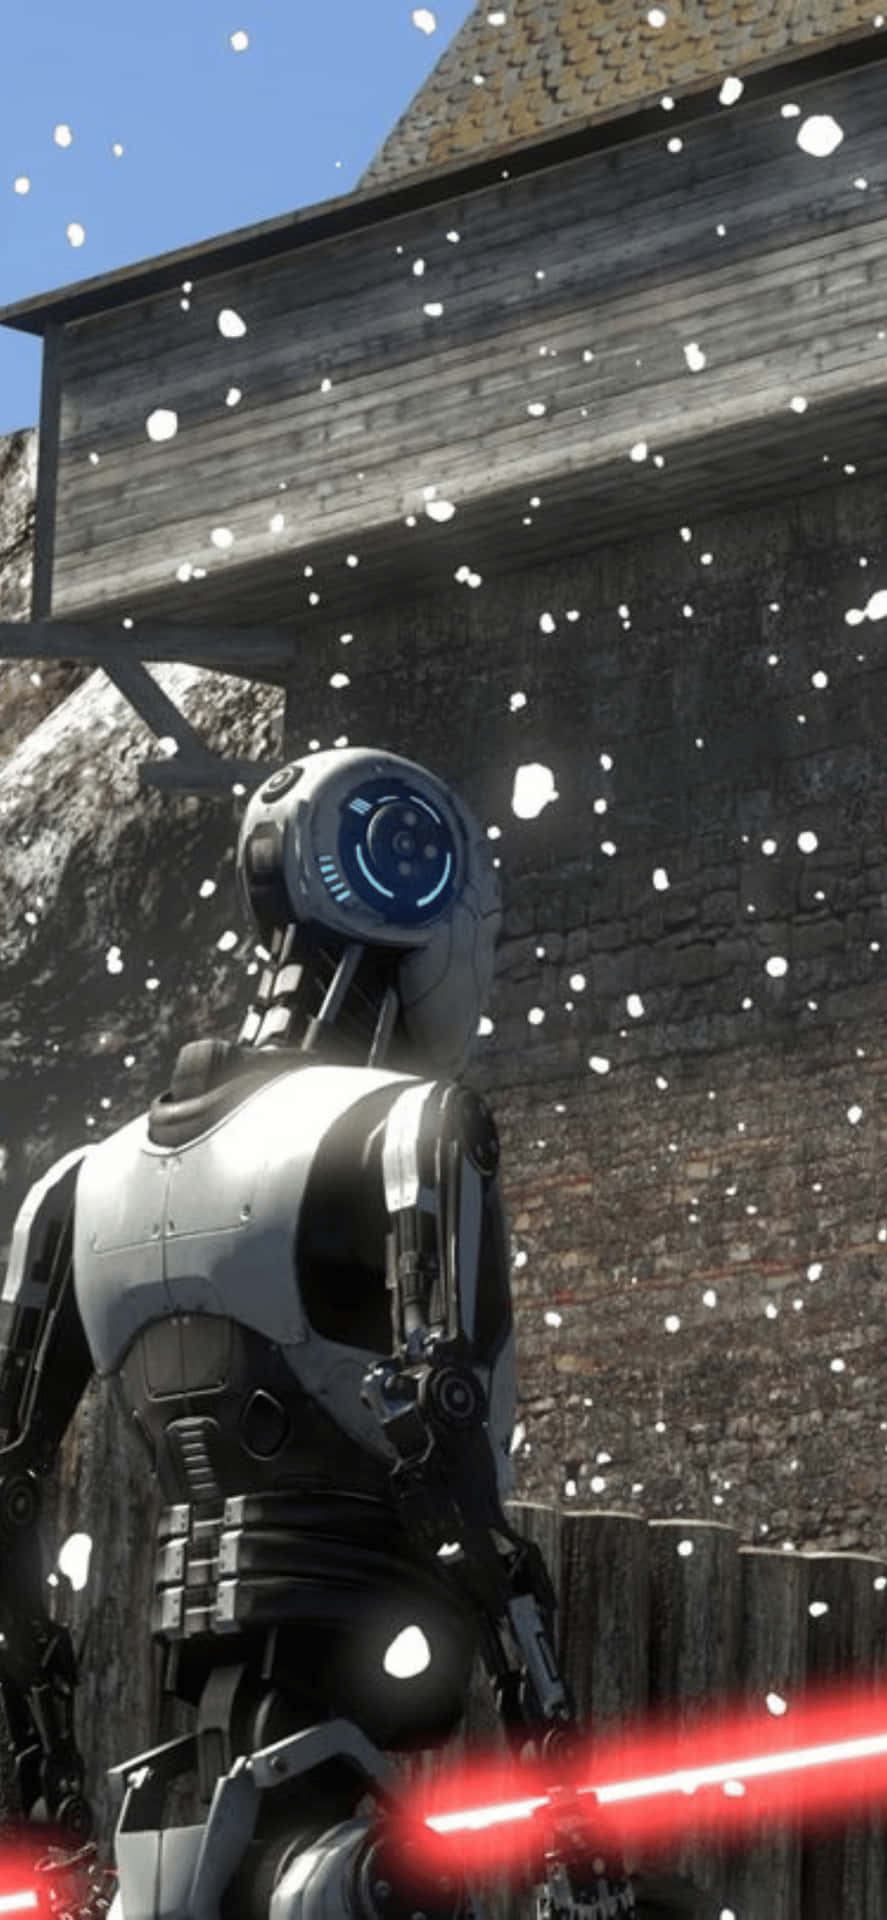 Unrobot Di Star Wars È In Piedi Nella Neve.